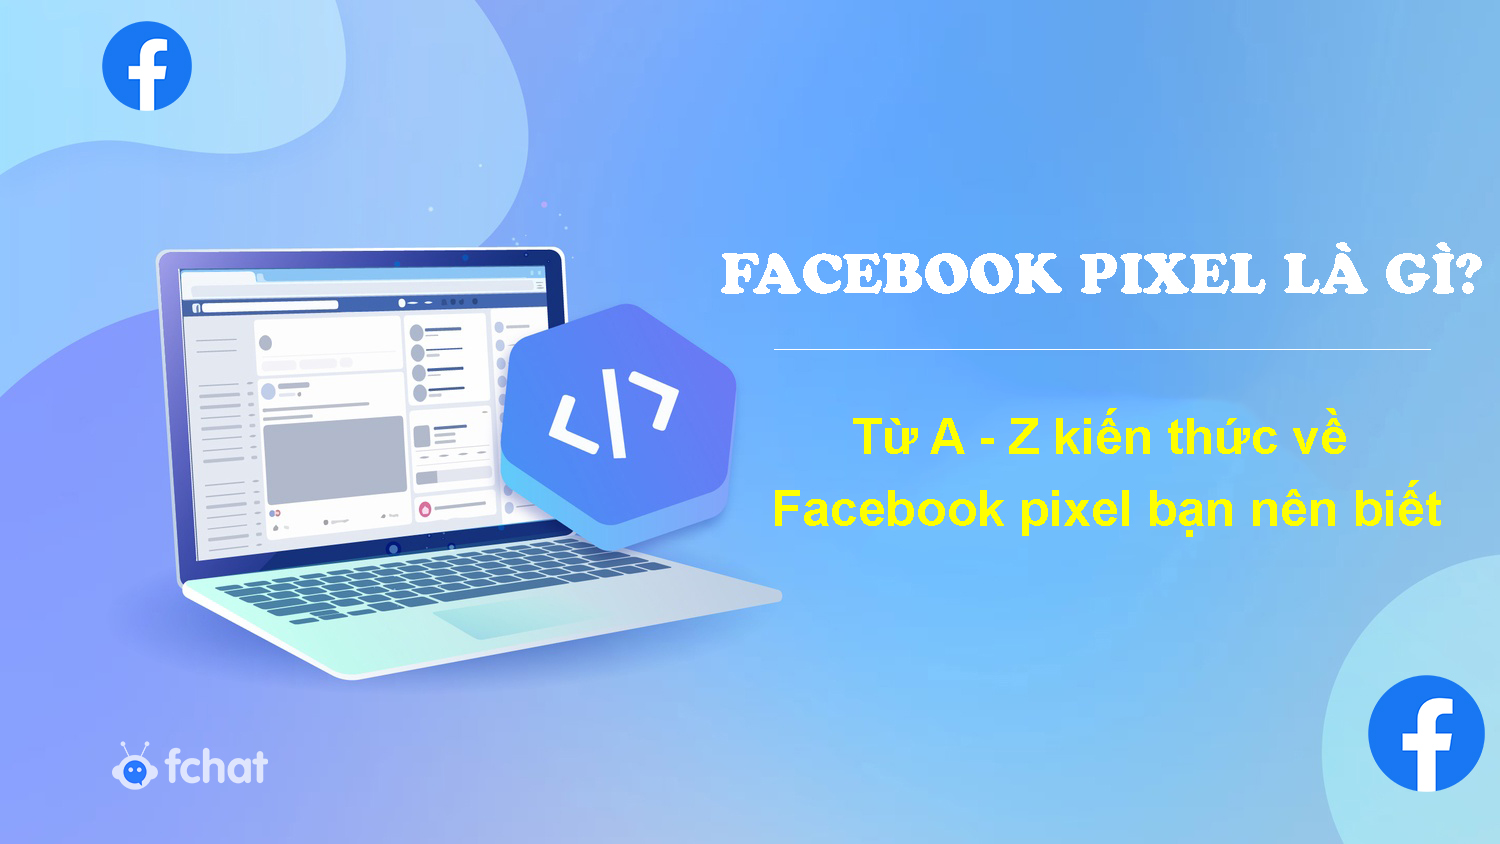 Facebook pixel là gì? Từ A - Z kiến thức về Facebook pixel bạn nên biết